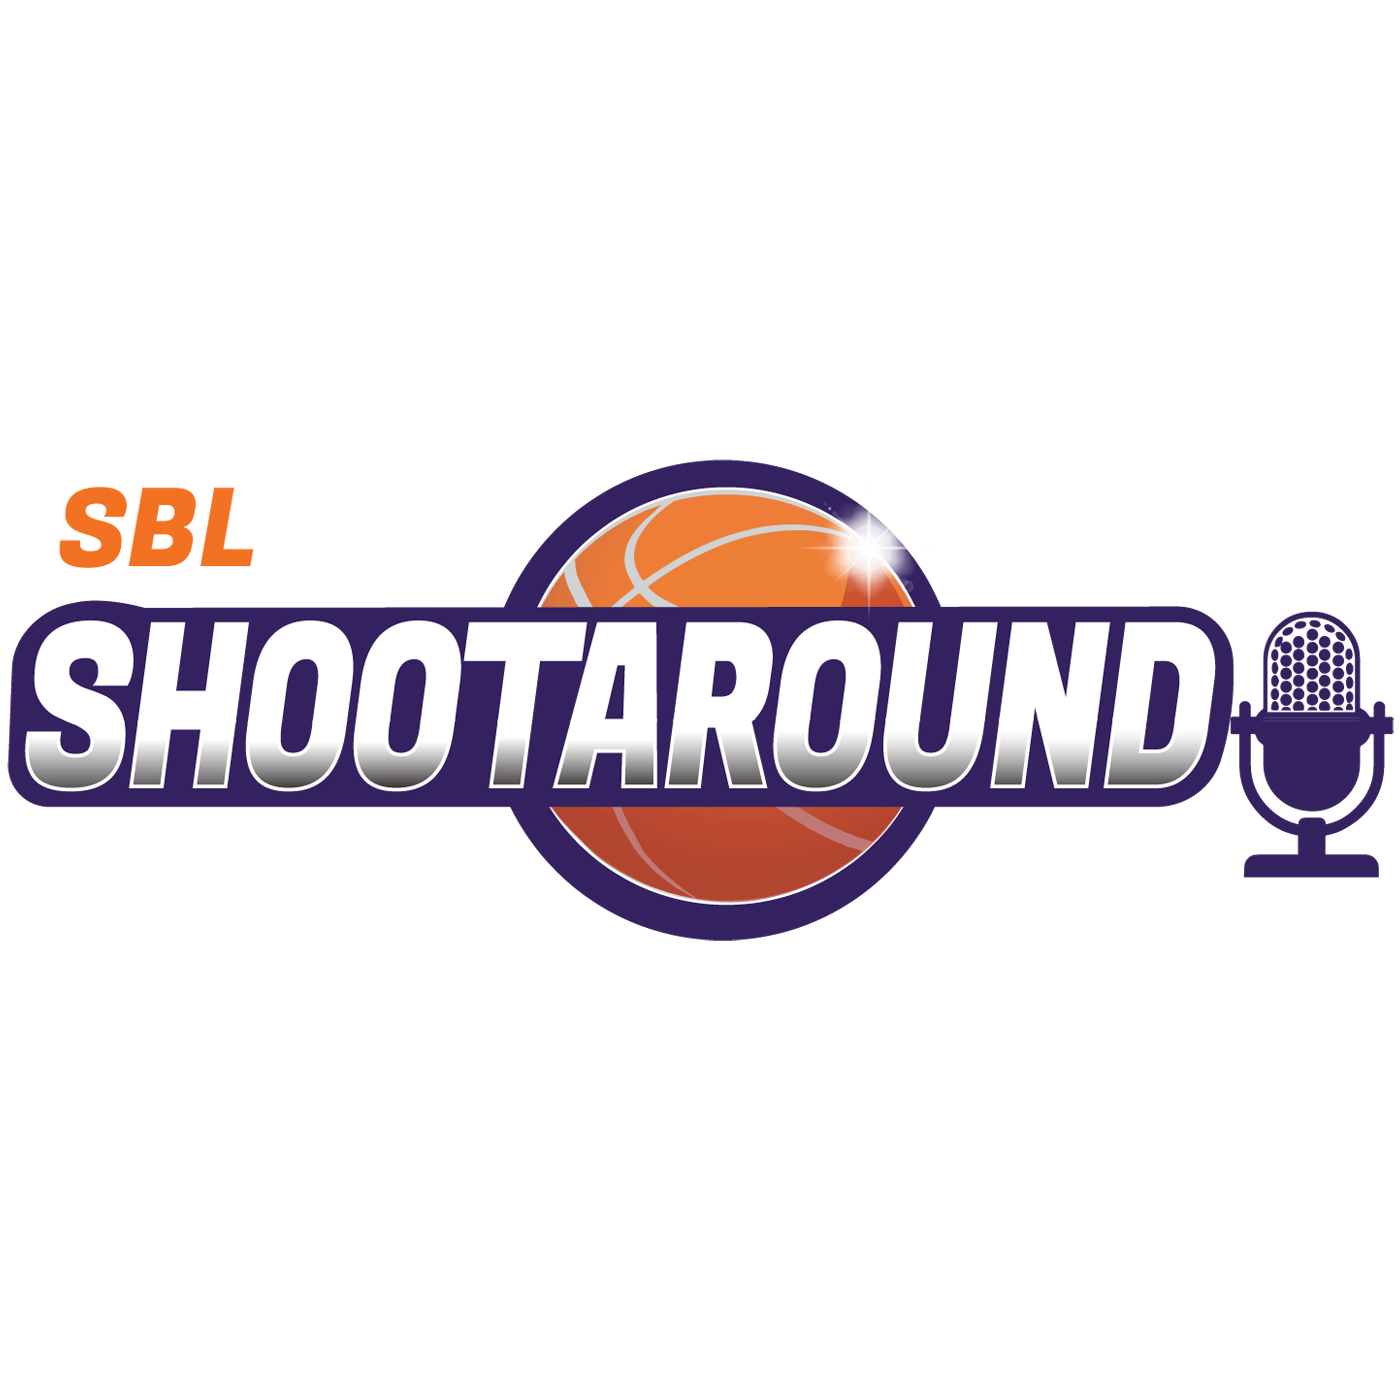 SBL Shootaround